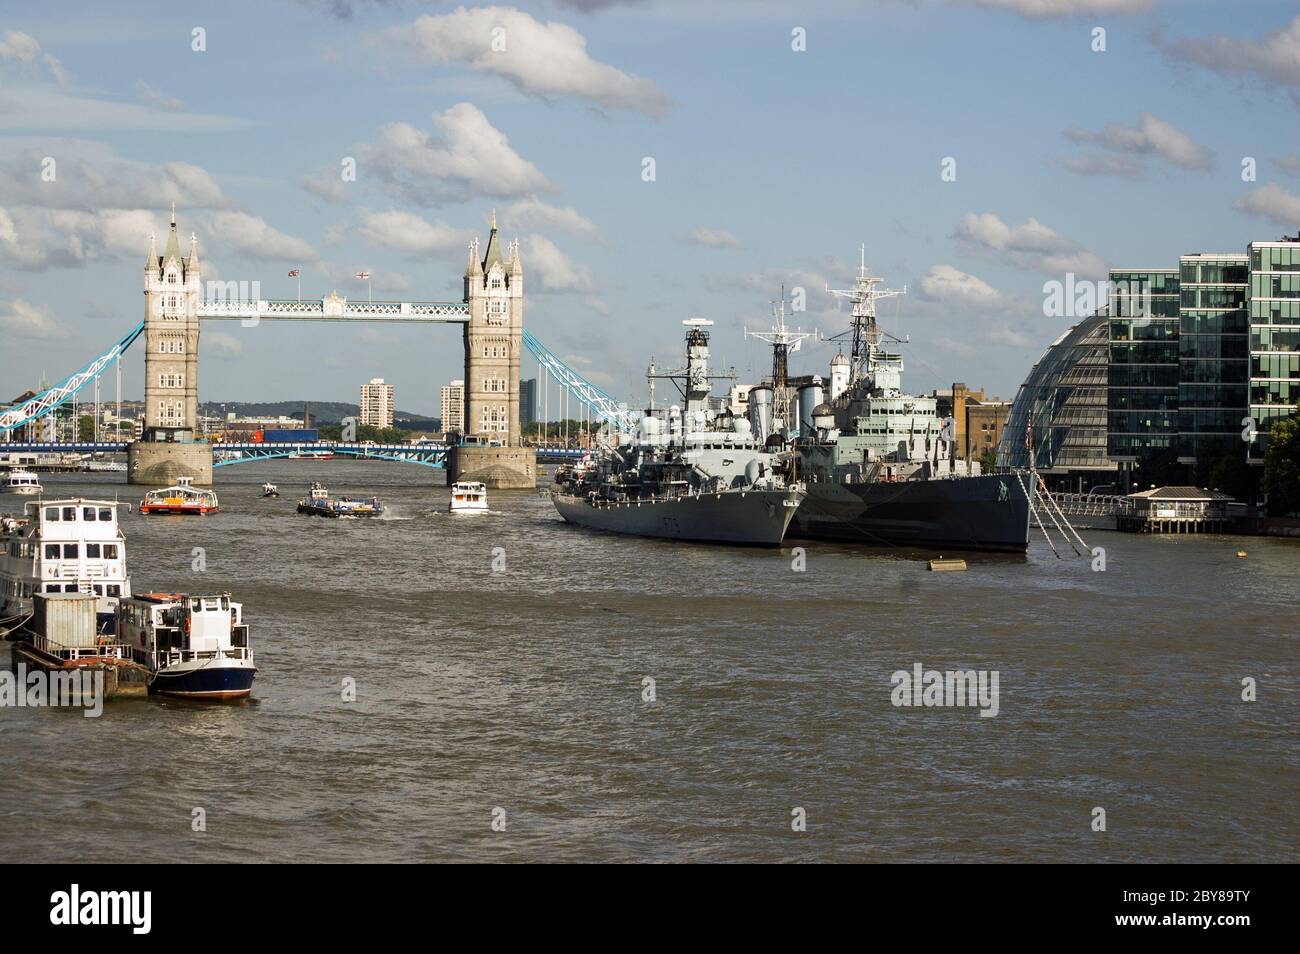 Londres, Royaume-Uni - 6 juillet 2011 : vue sur la Tamise depuis le London Bridge, City of London. Tower Bridge en arrière-plan avec les navires de la marine HMS Portl Banque D'Images